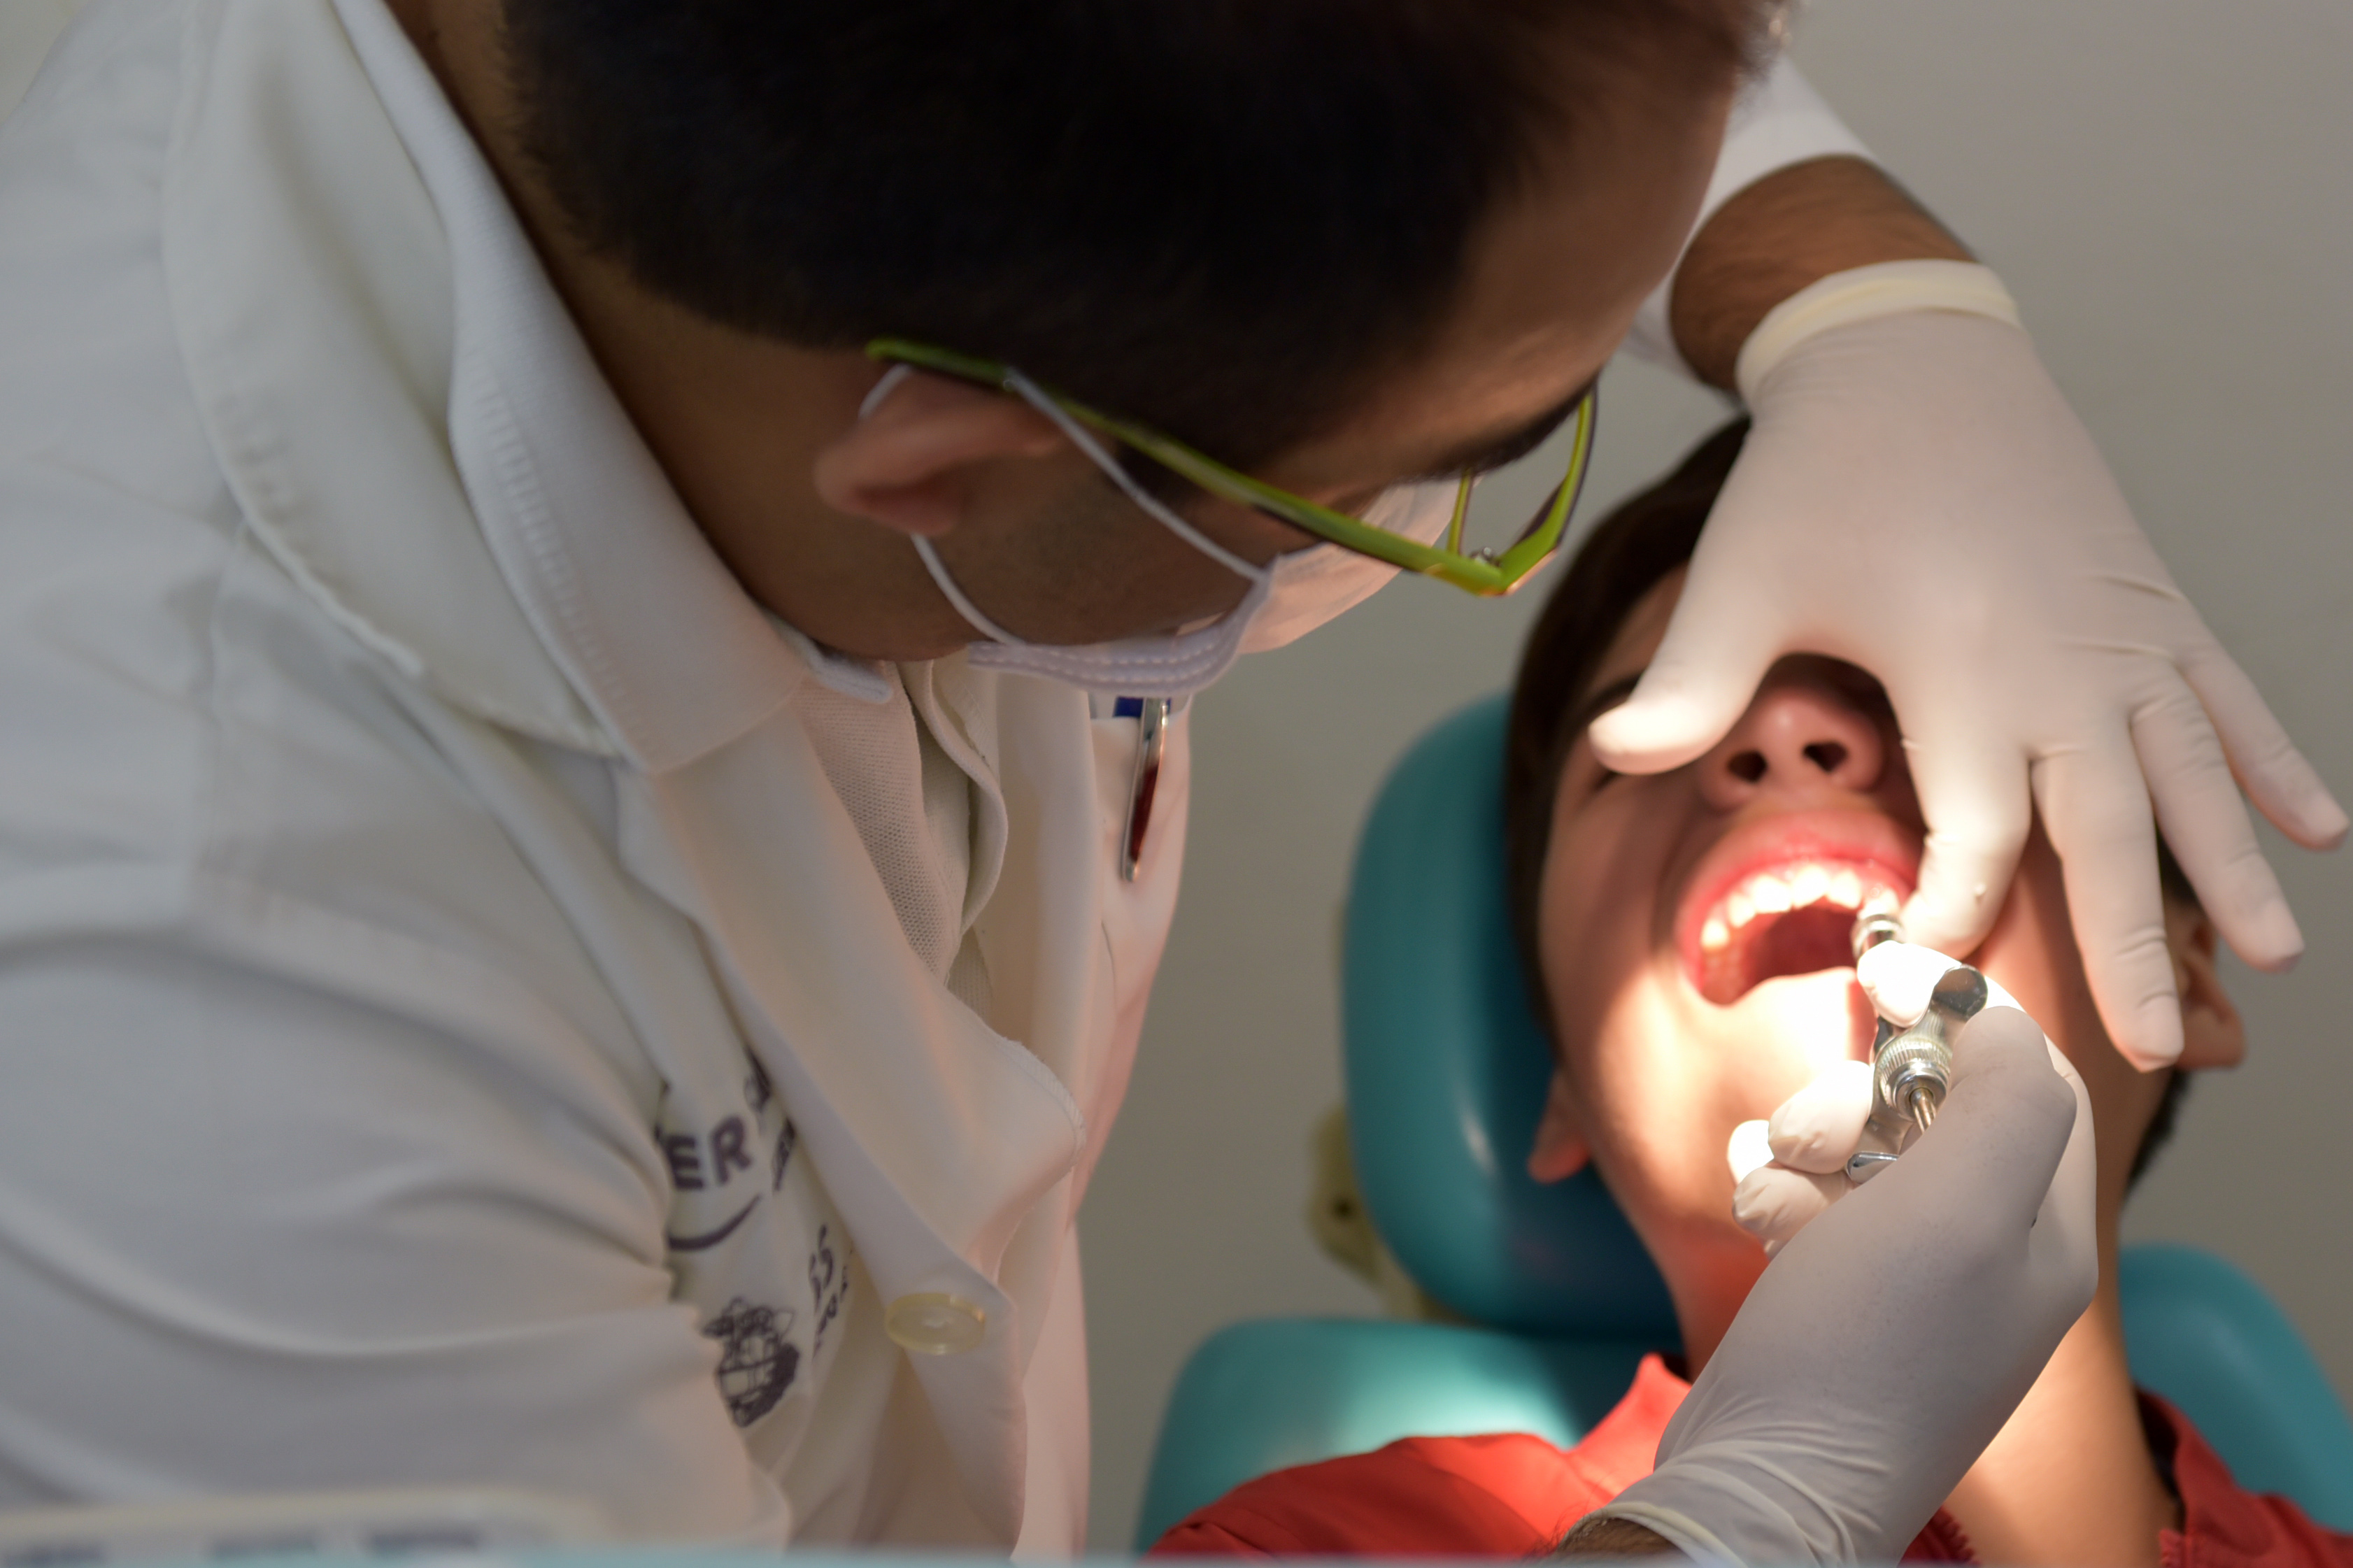 El 7 y 8 de octubre, Xalapa será sede del congreso de odontología